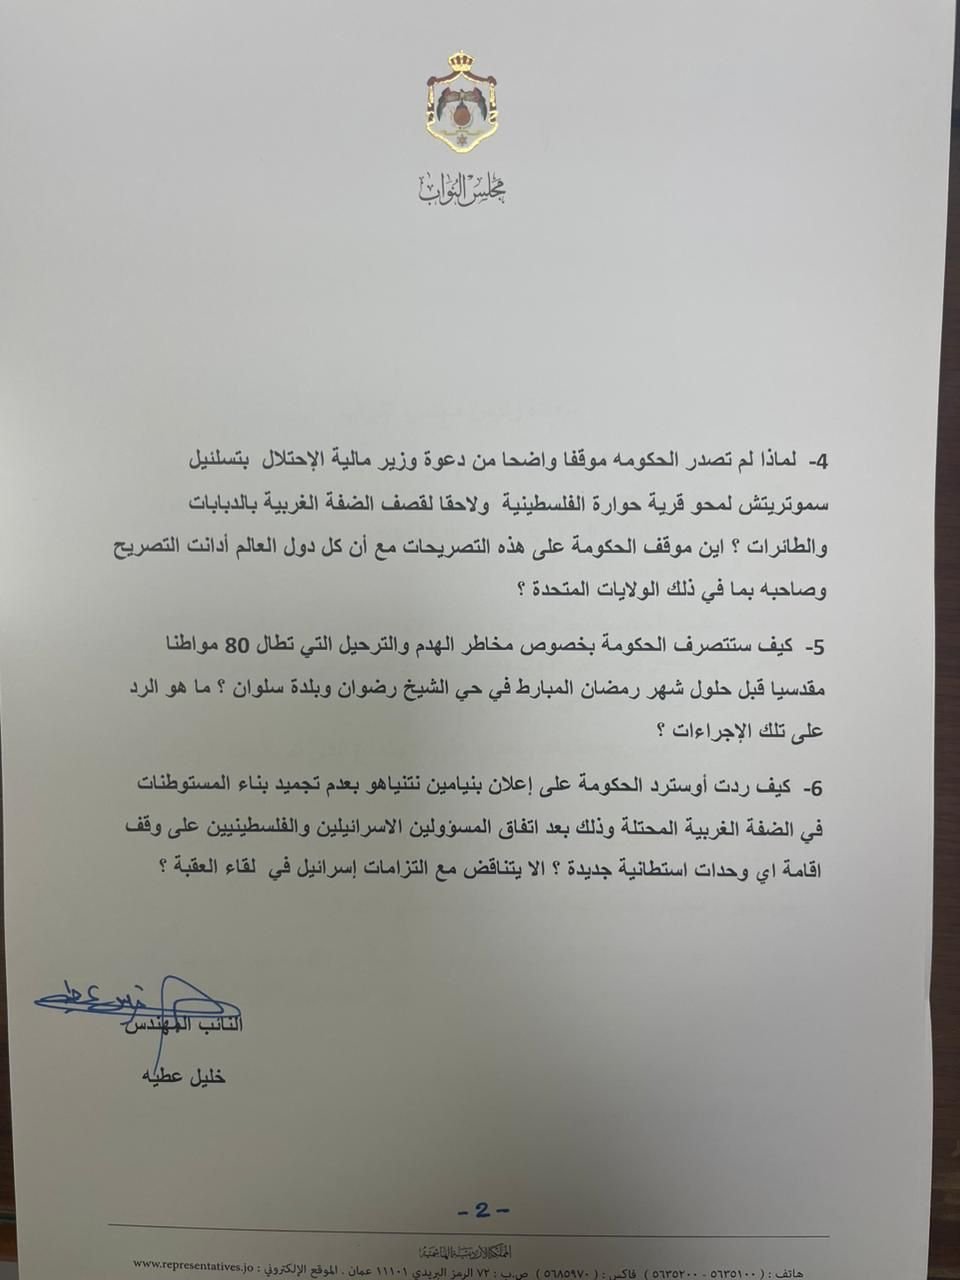 النائب الأردني خليل عطية يقدم استجوابا لرئيس الوزراء حول الأوضاع في القدس-0